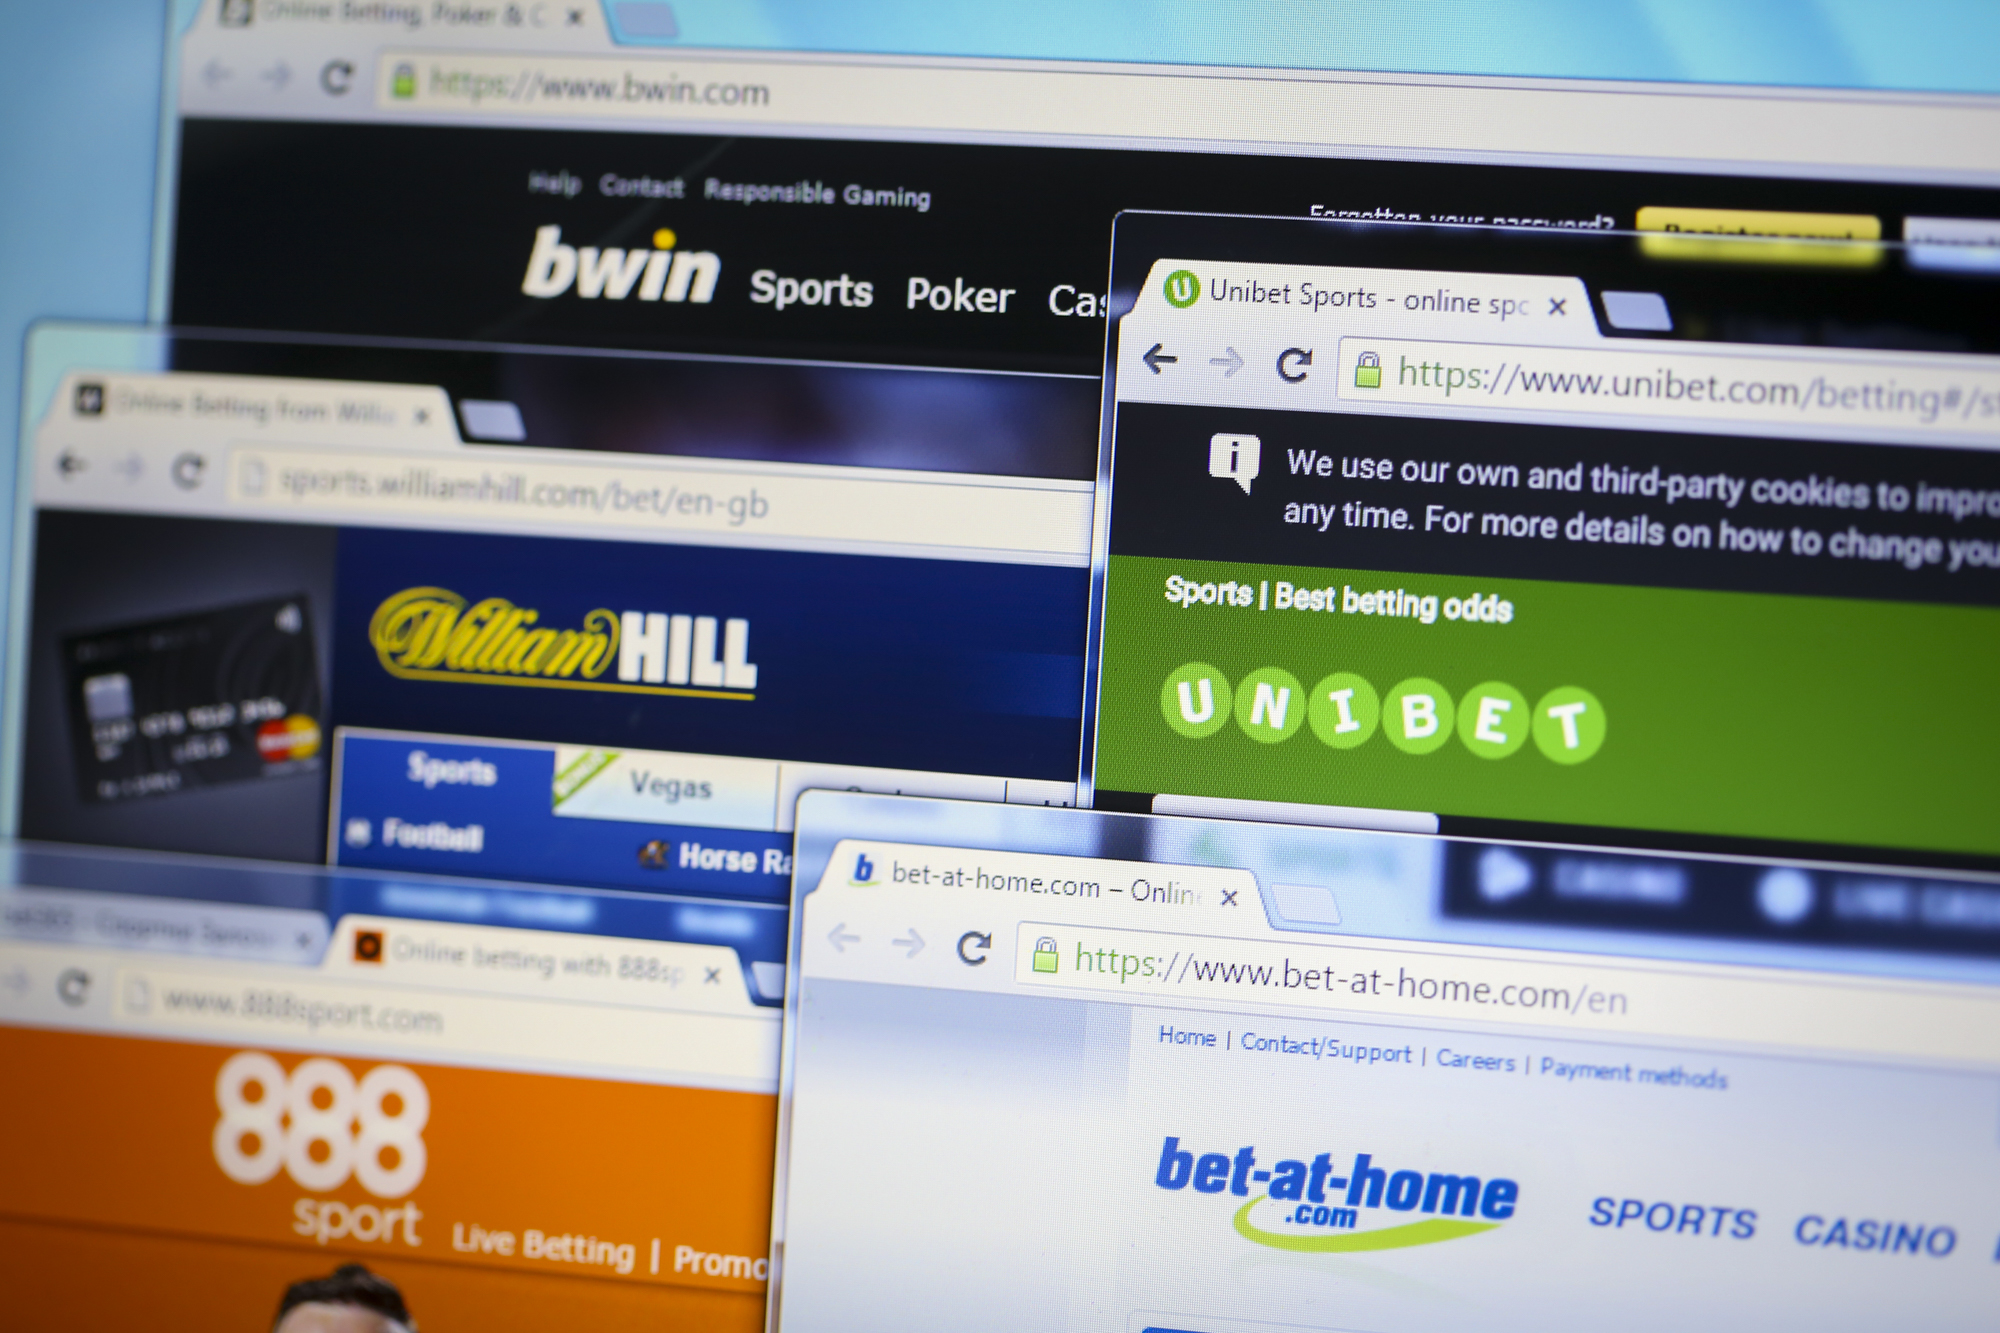 Bet-at-home 어떻게 국제적인 온라인 스포츠 베팅 회사가 되었을까?